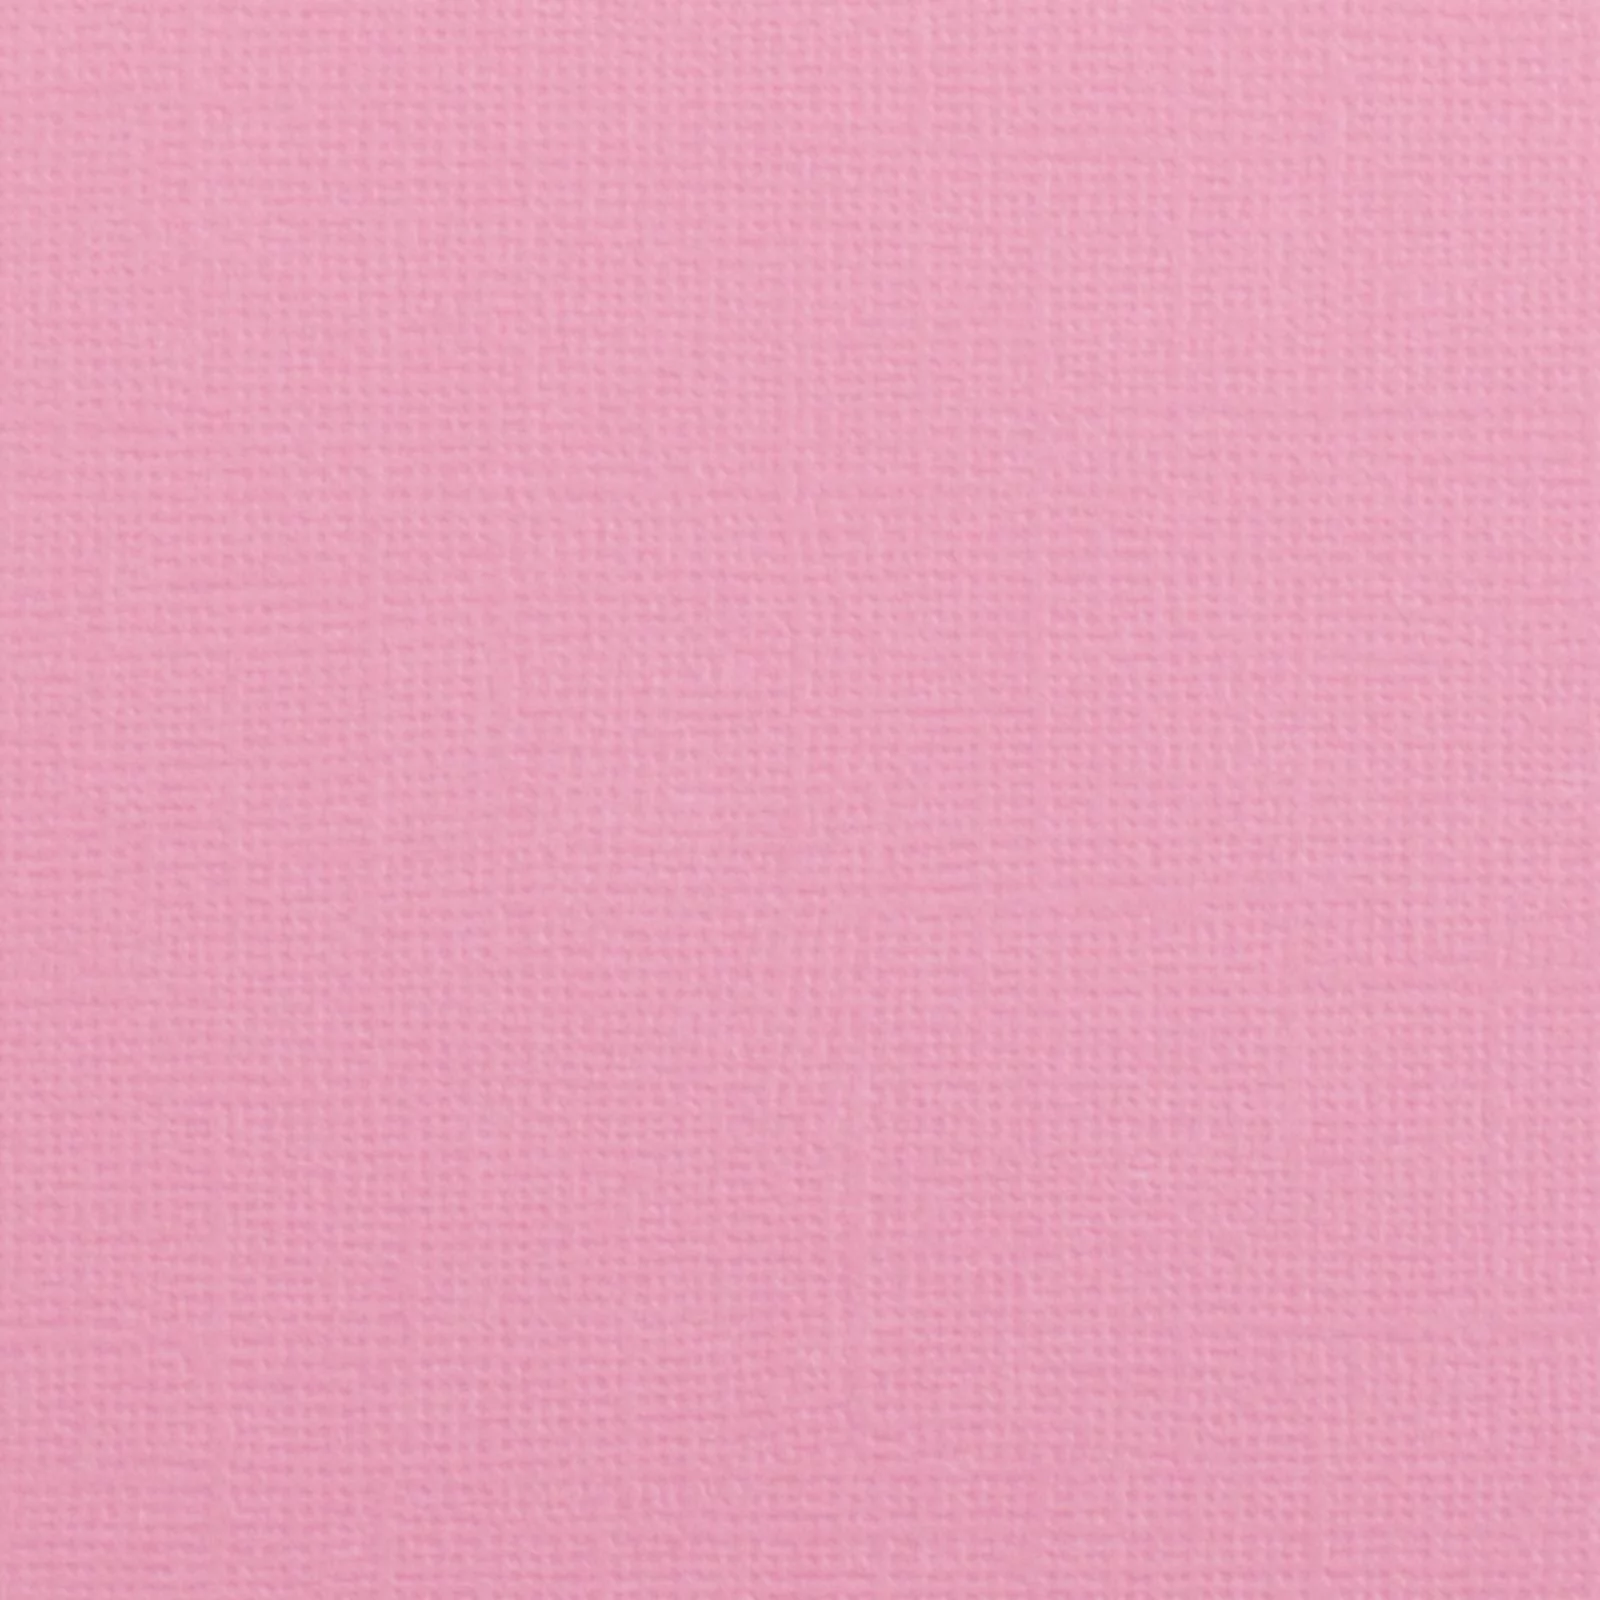 Cardstock texture Pink